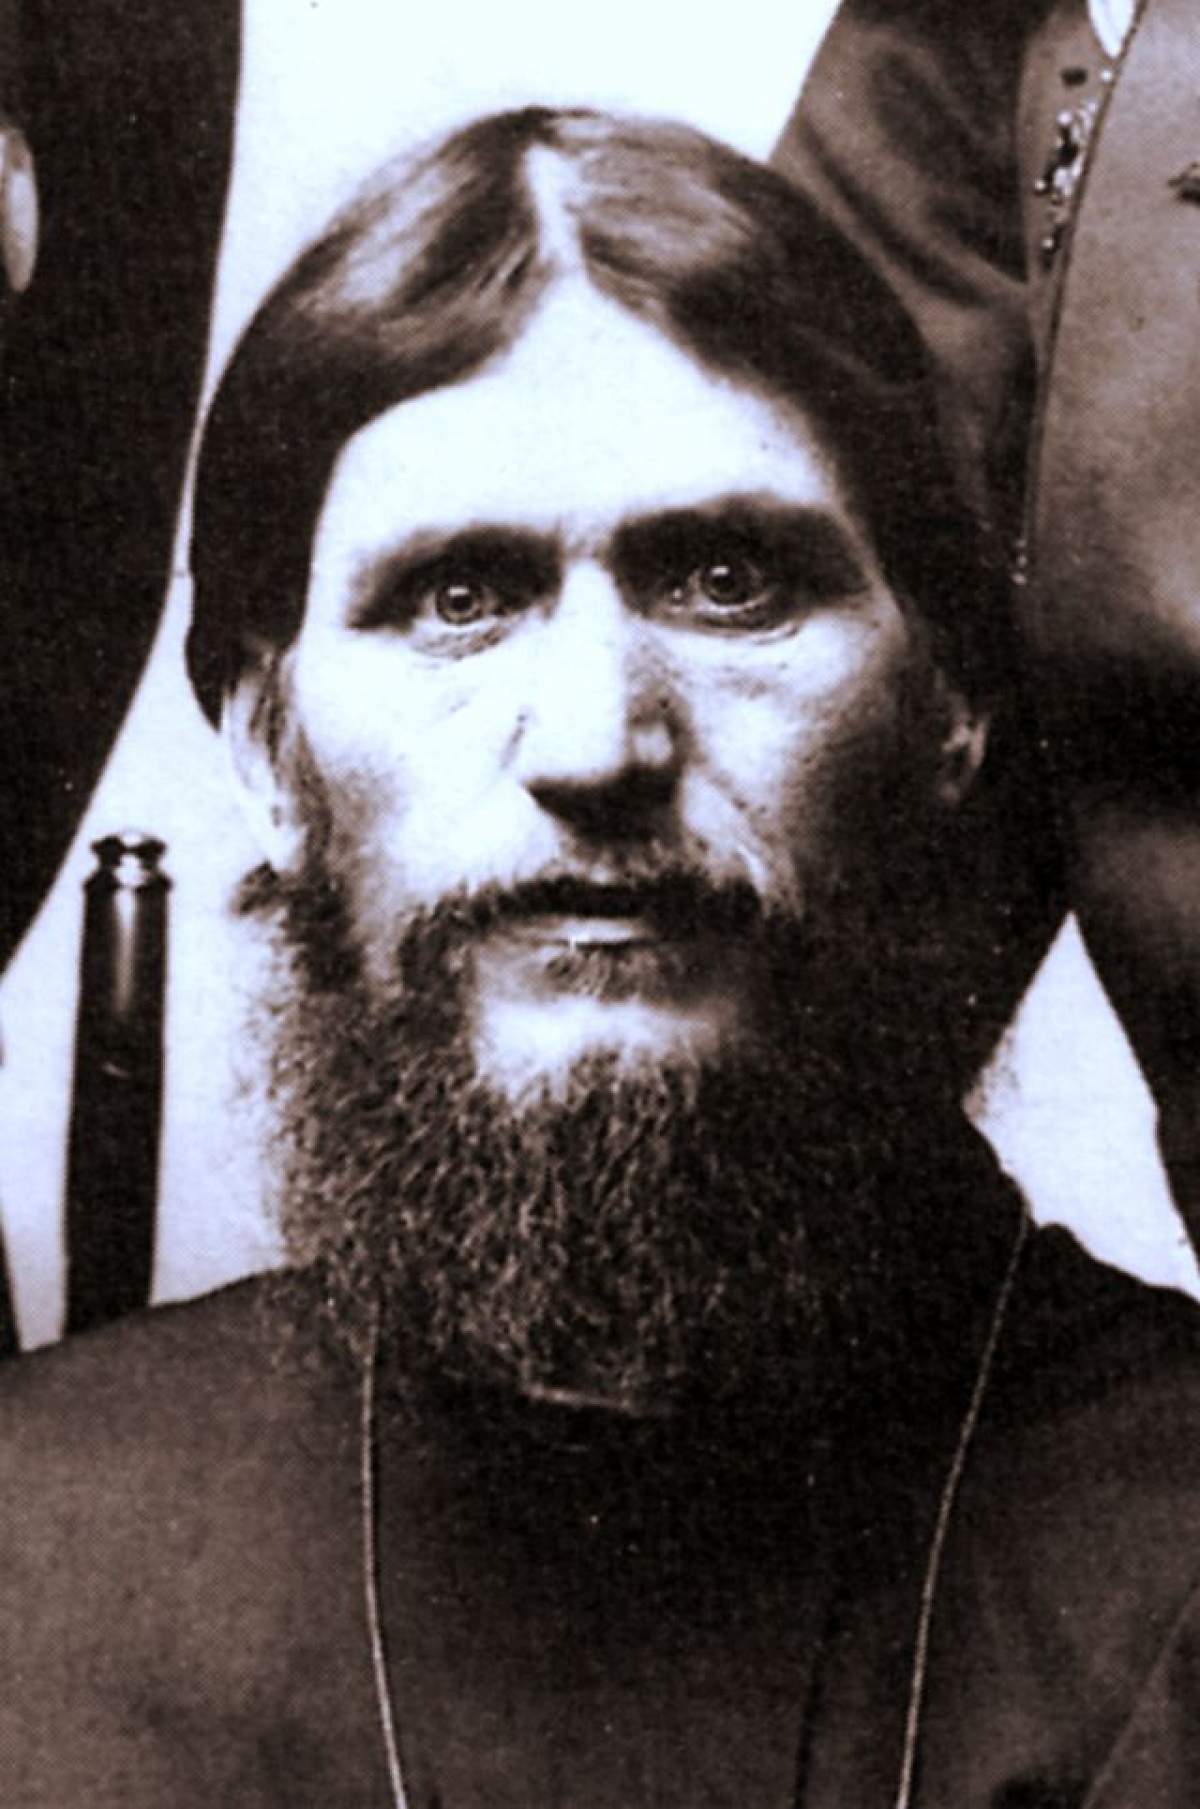 Penisul lui Rasputin de 30 de cm, cel mai bine conservat organ din istorie!